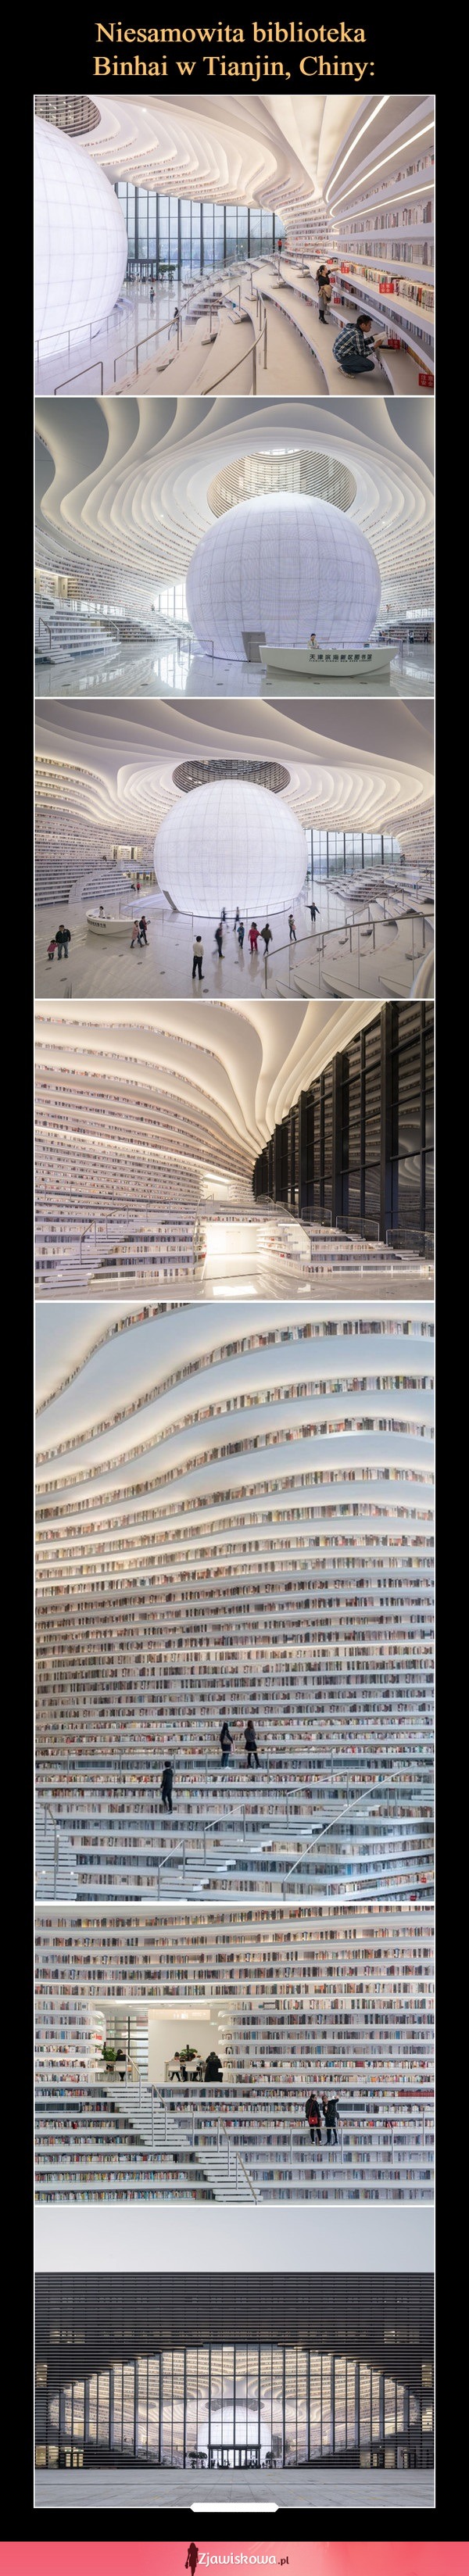 Niesamowita biblioteka Binhai w Tianjin - Chiny!